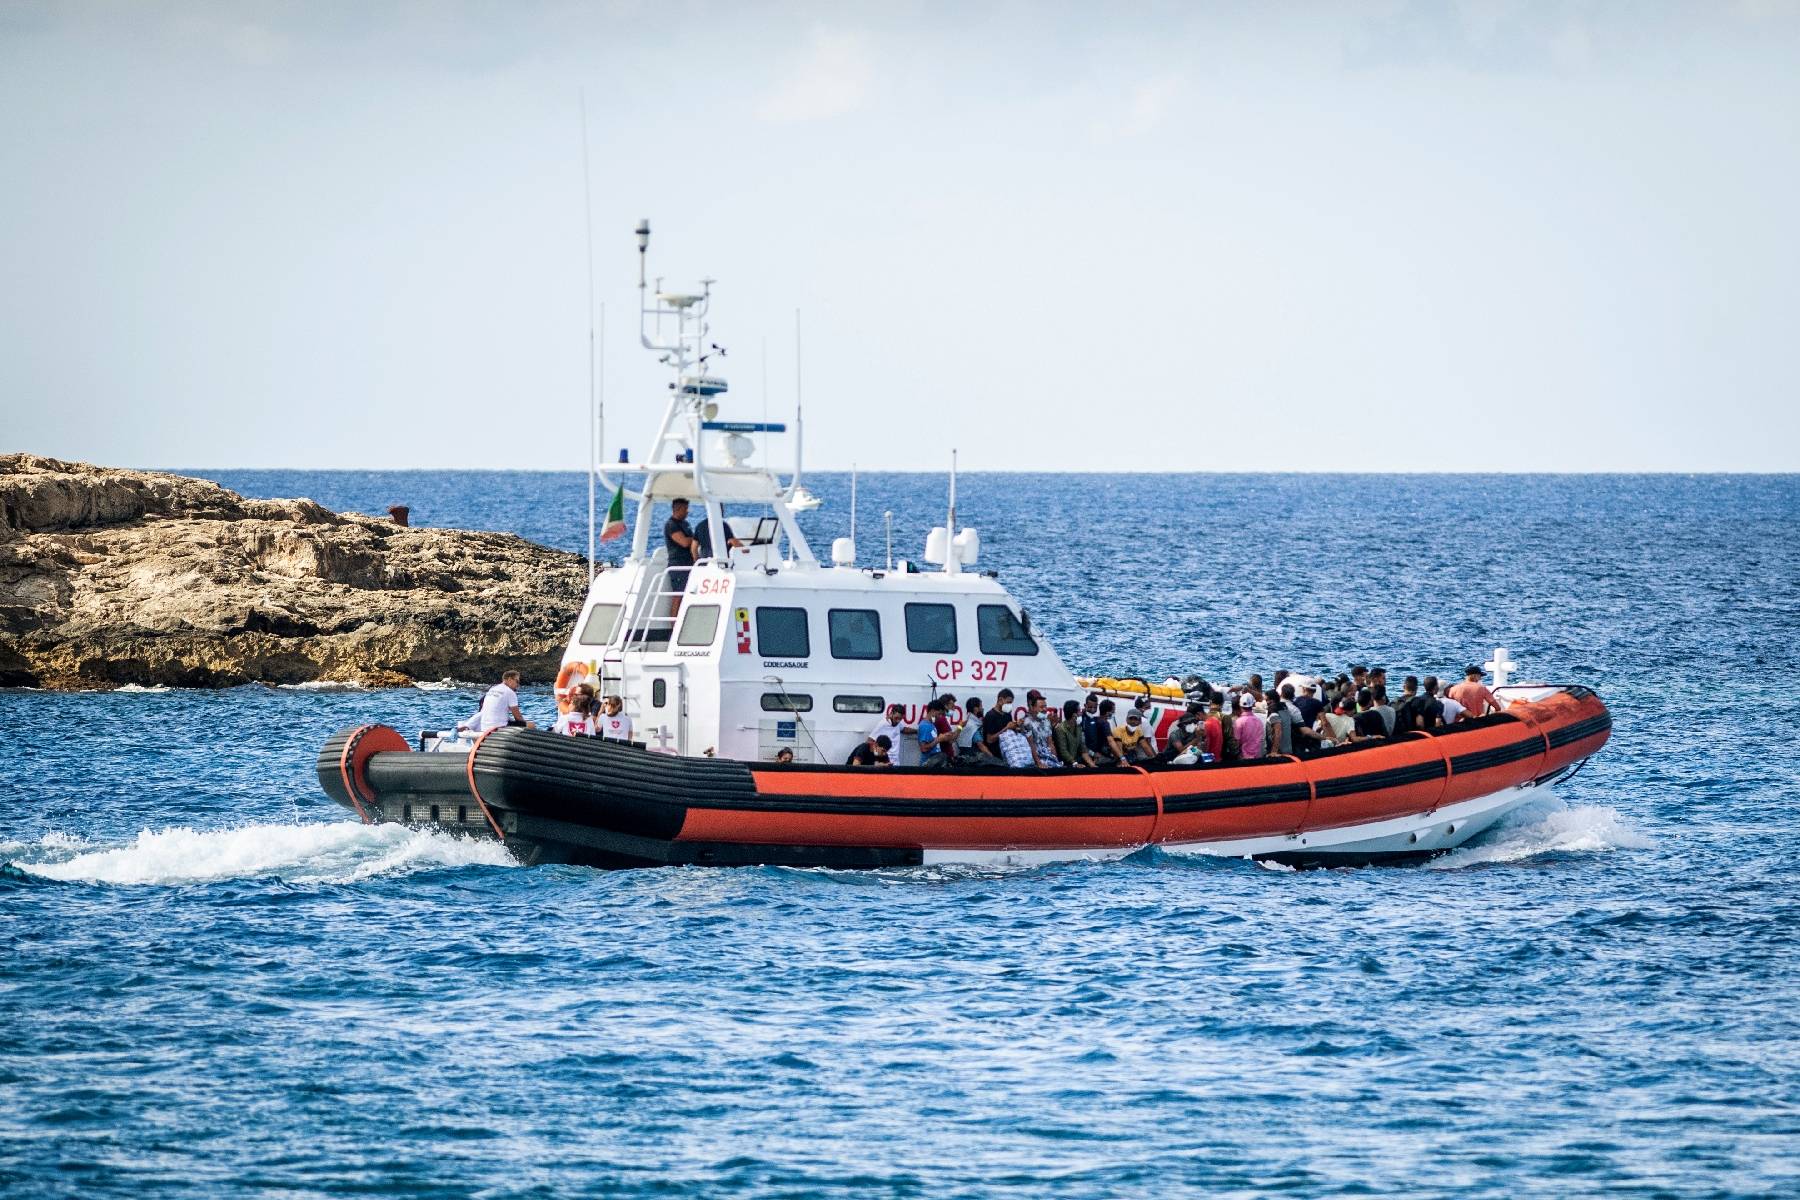 Huit migrants morts retrouvés à bord d'une embarcation en Méditerranée